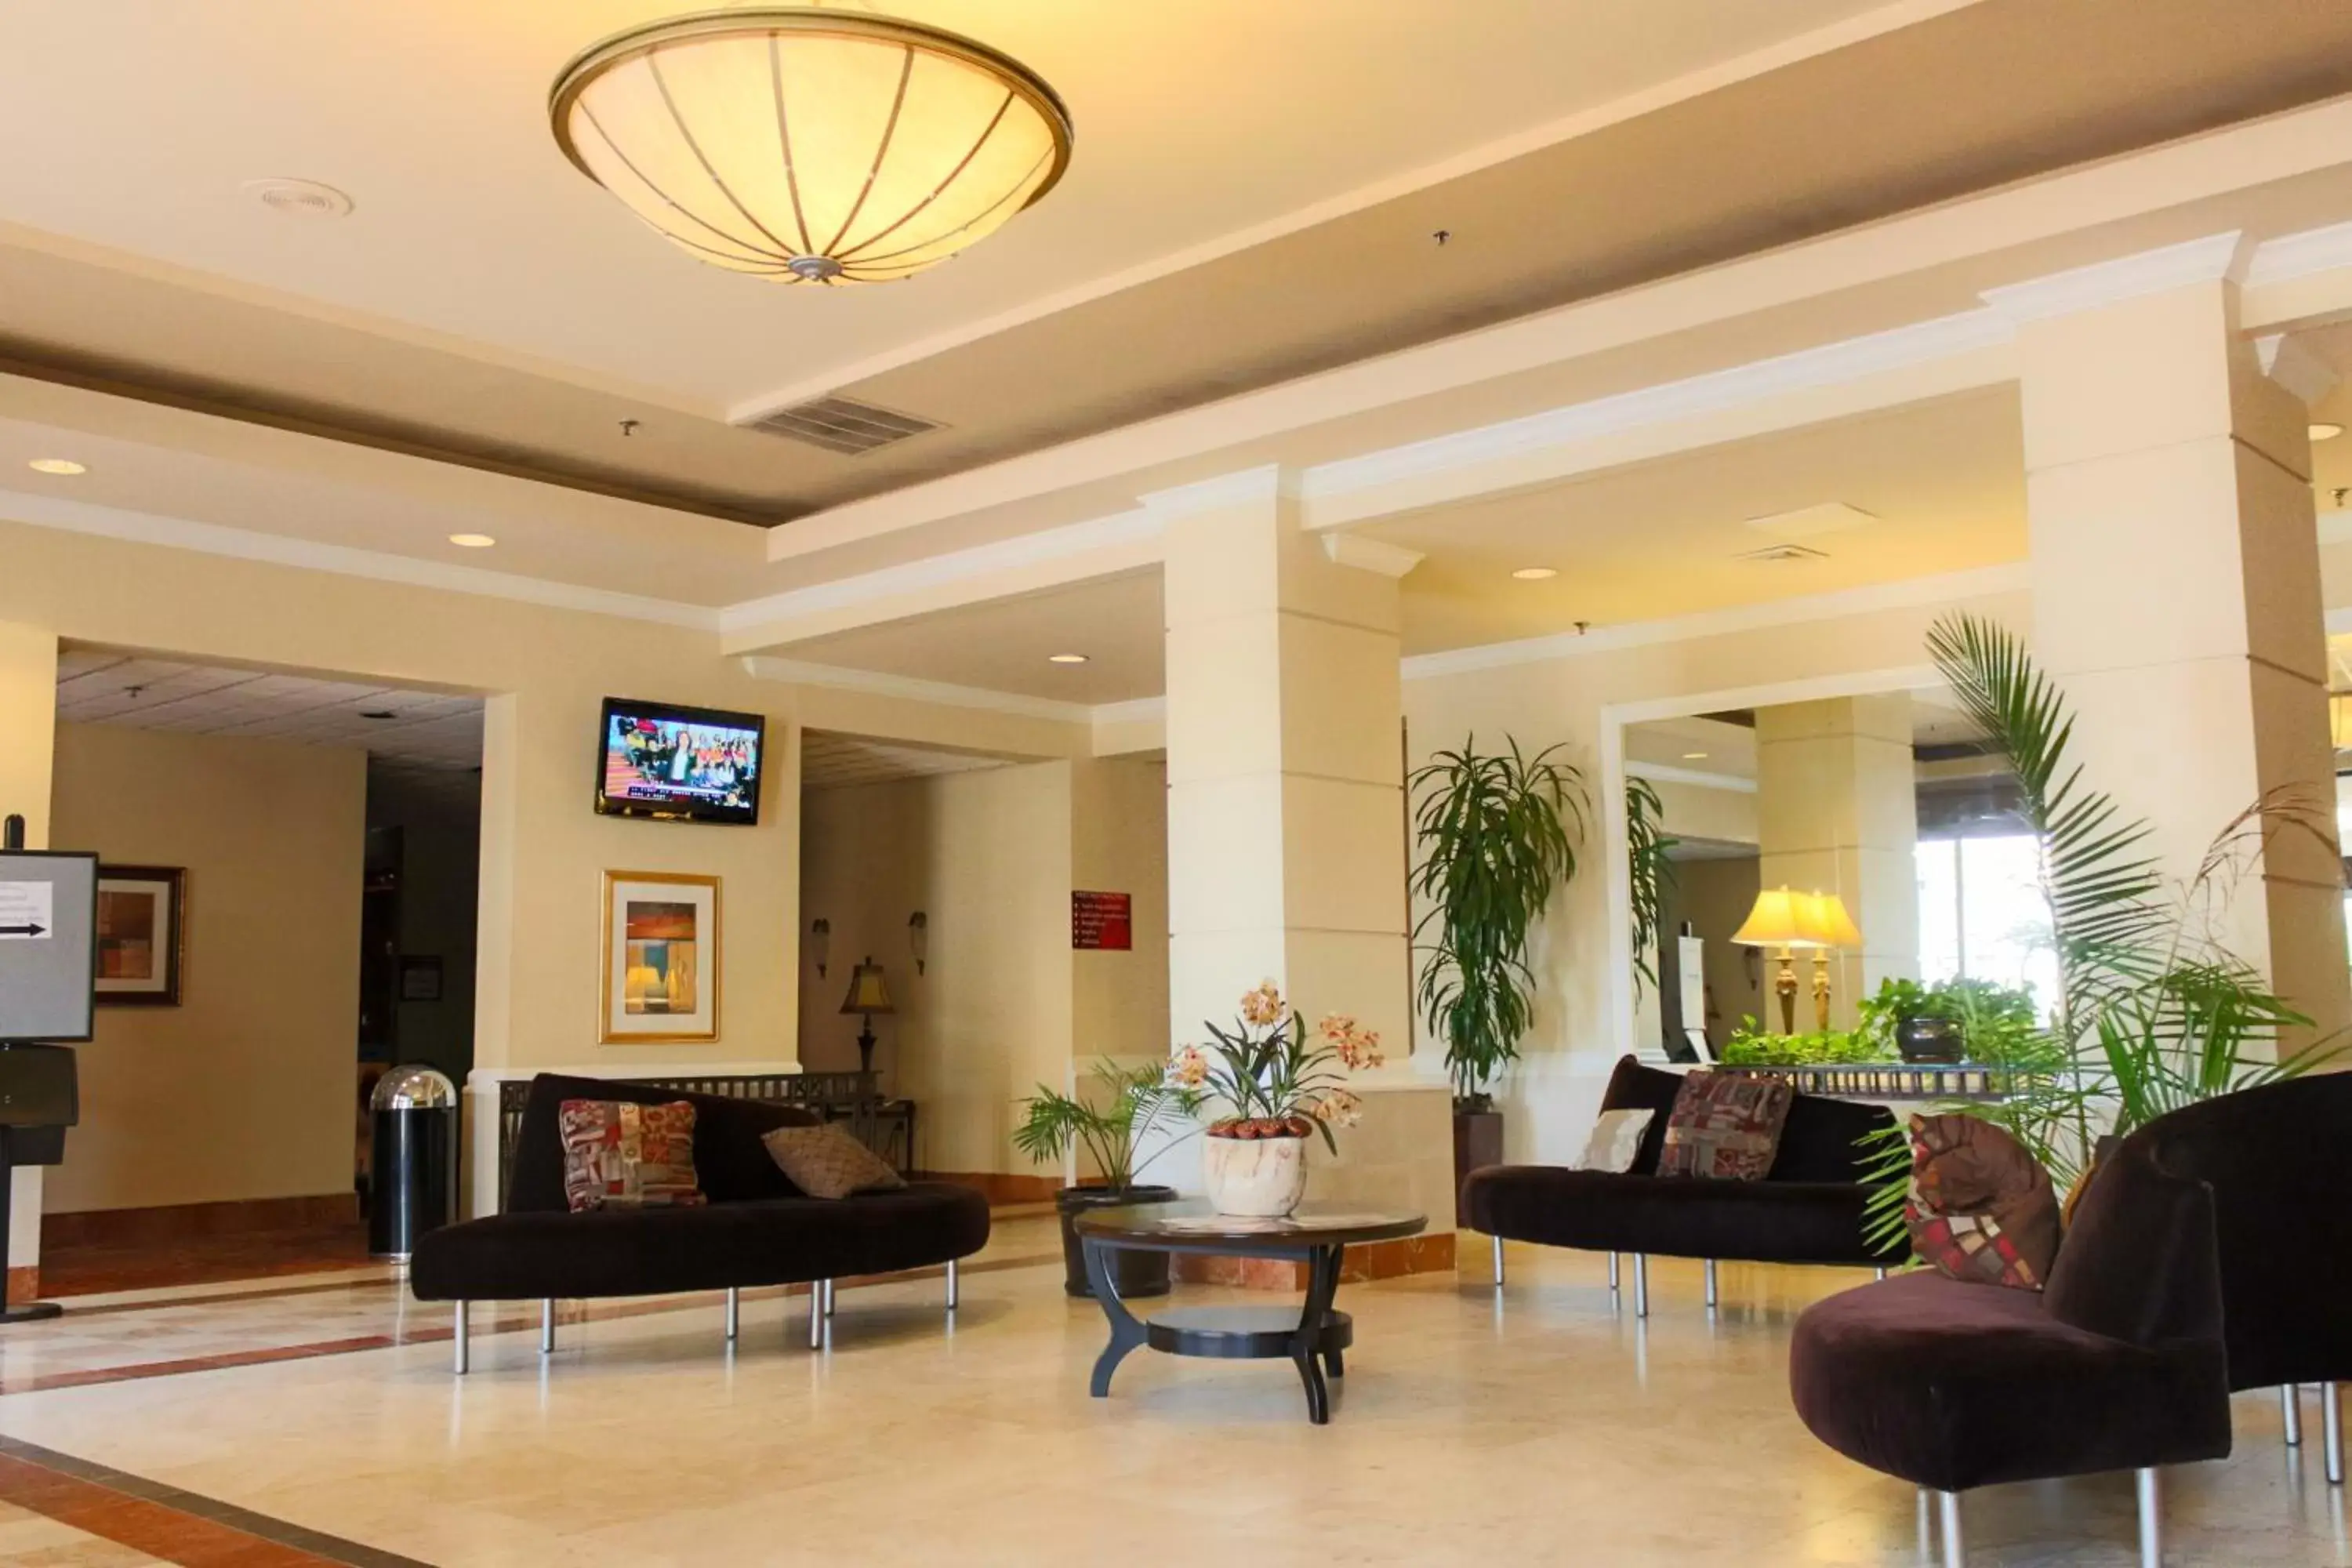 Lobby or reception, Lobby/Reception in Ramada Plaza by Wyndham Atlanta Airport